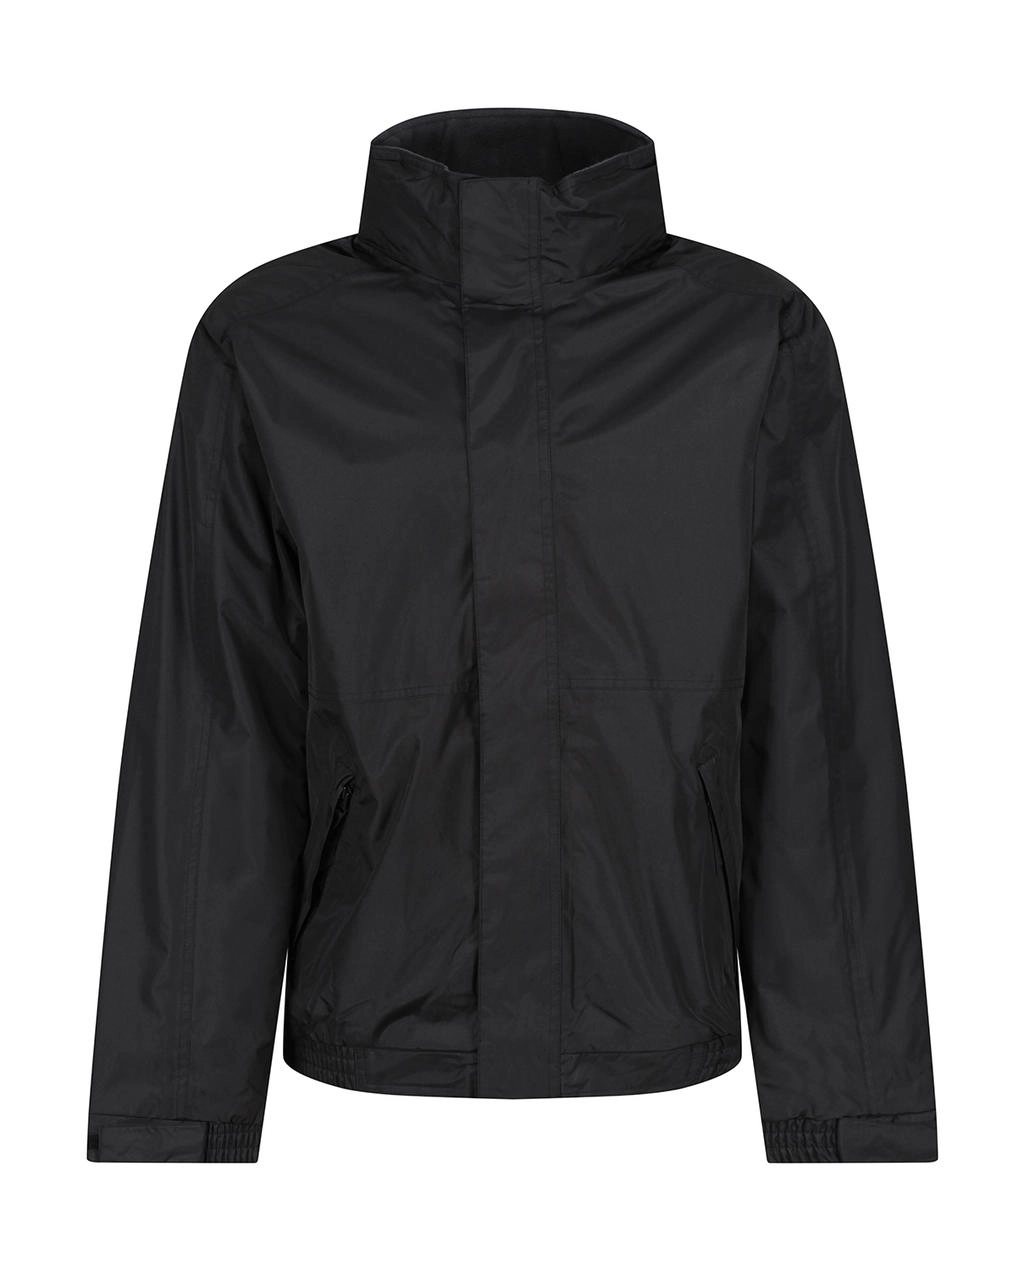 Eco Dover Jacket zum Besticken und Bedrucken in der Farbe Black/Ash mit Ihren Logo, Schriftzug oder Motiv.